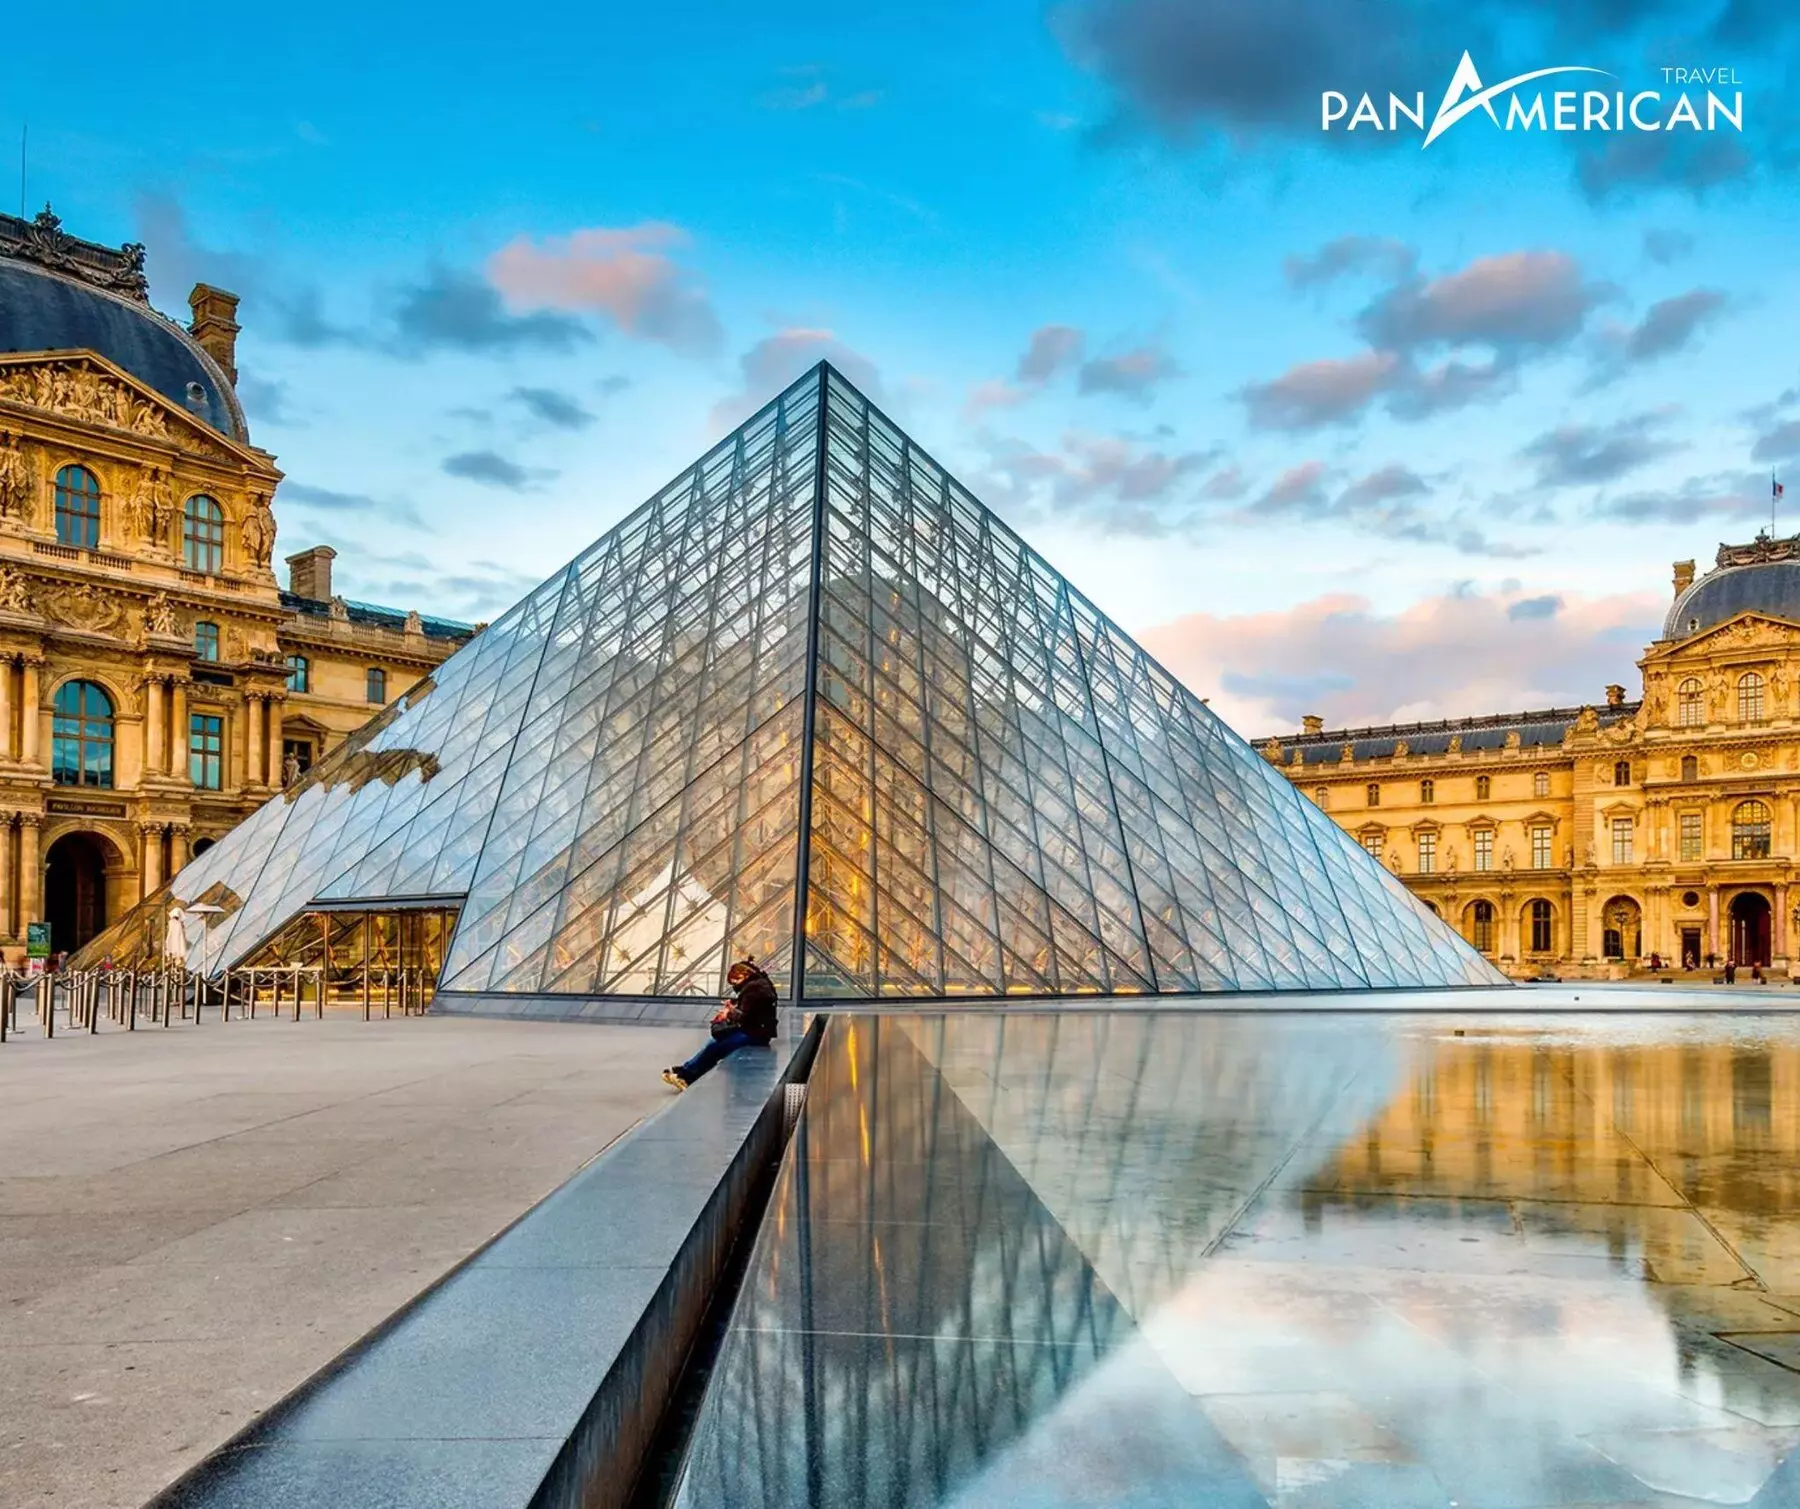 Bảo tàng Louvre - Nơi lưu giữ bộ sưu tập bảo vật lớn nhất thế giới